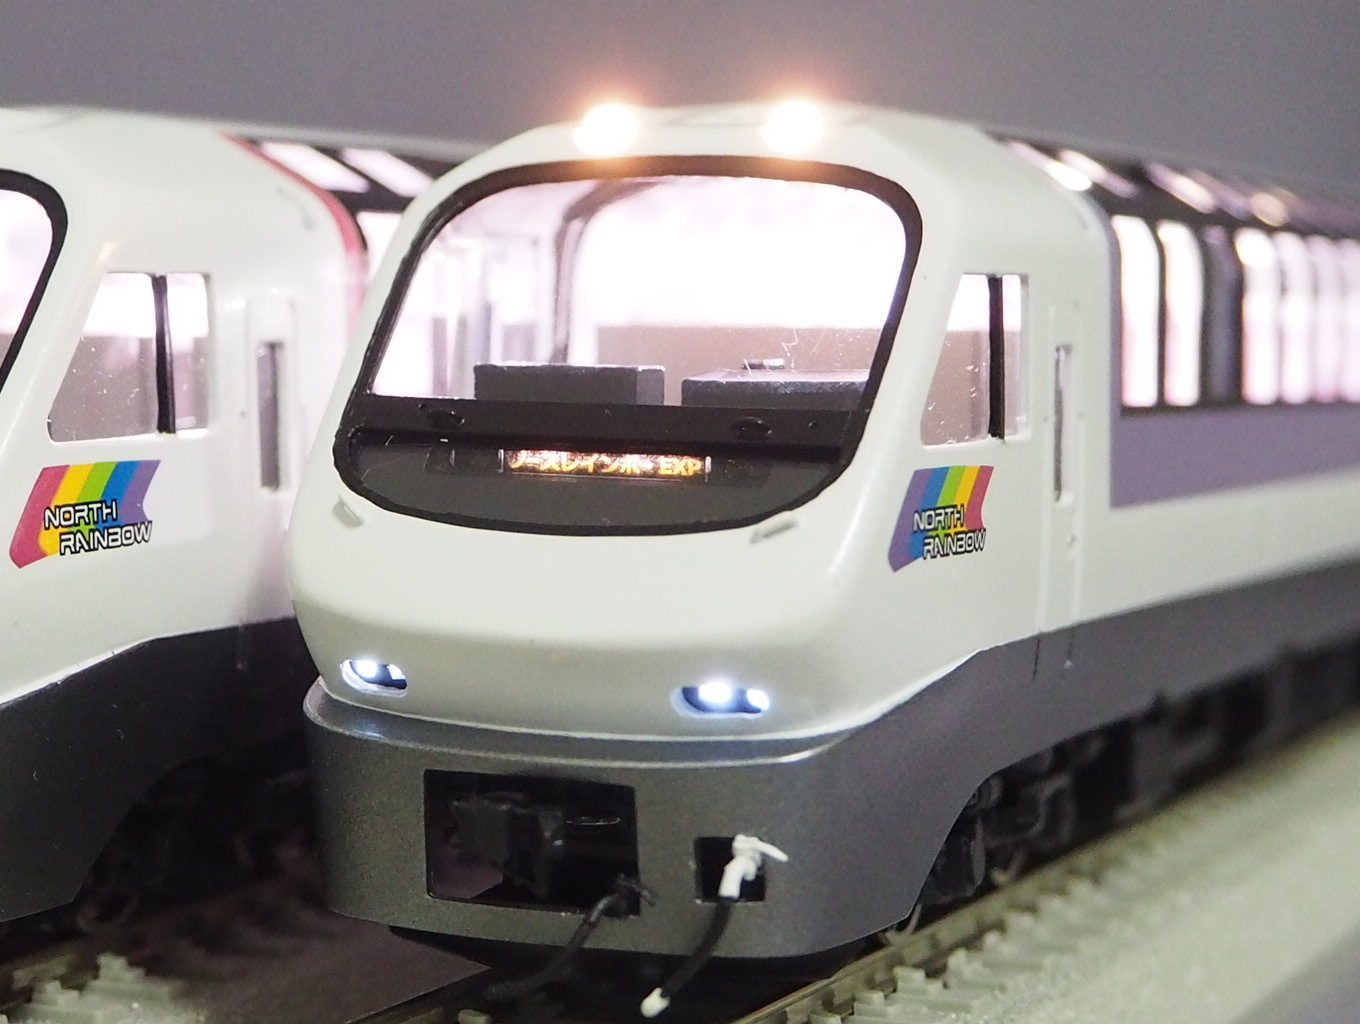 JR北海道キハ183系5200番代「ノースレインボーエクスプレス」 - 鉄道 